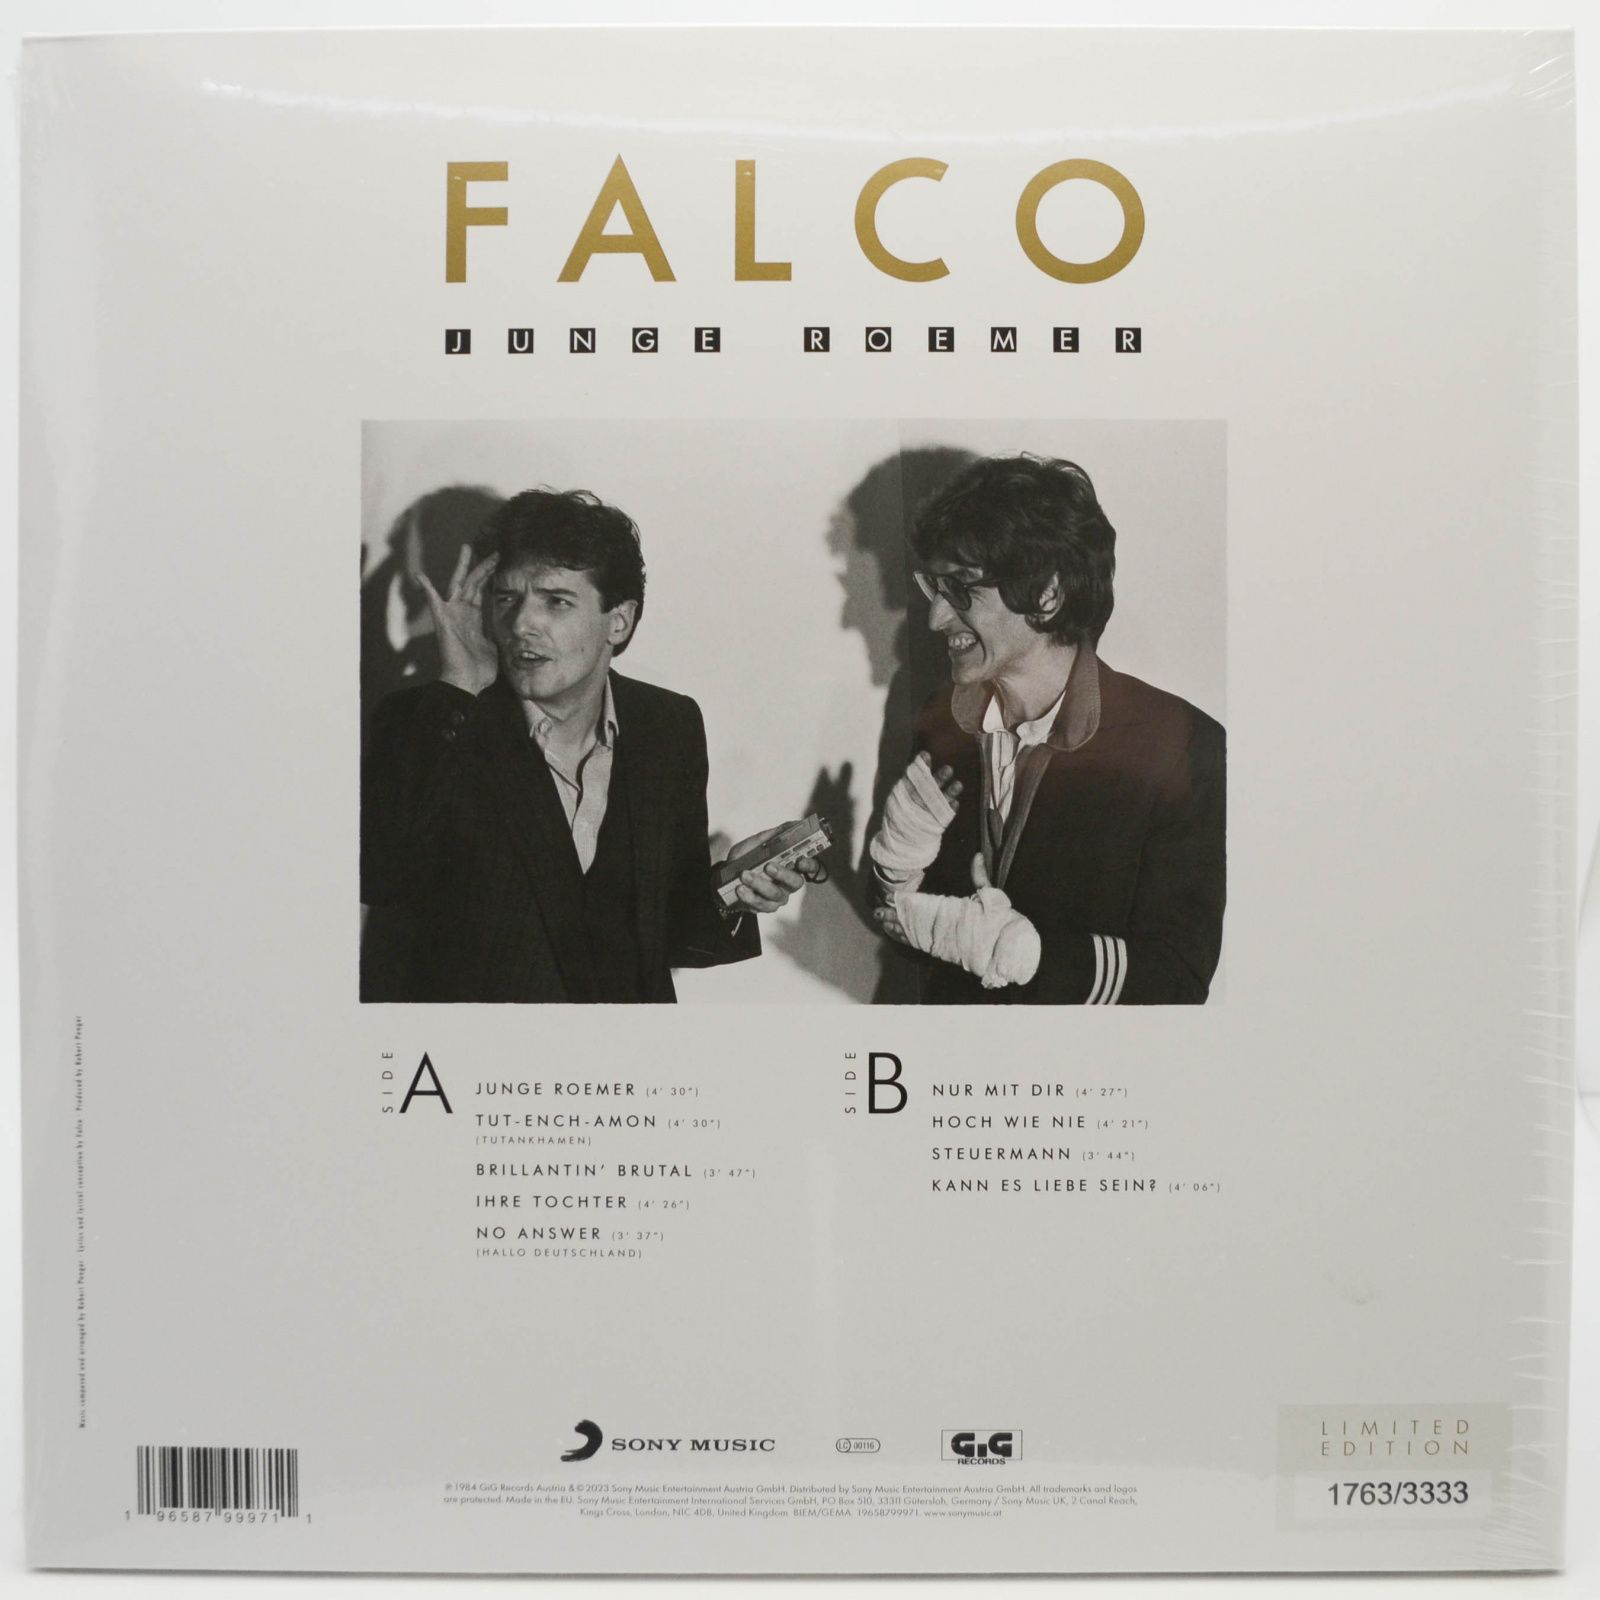 Falco — Junge Roemer (The Gottfried Helnwein Edition), 1984